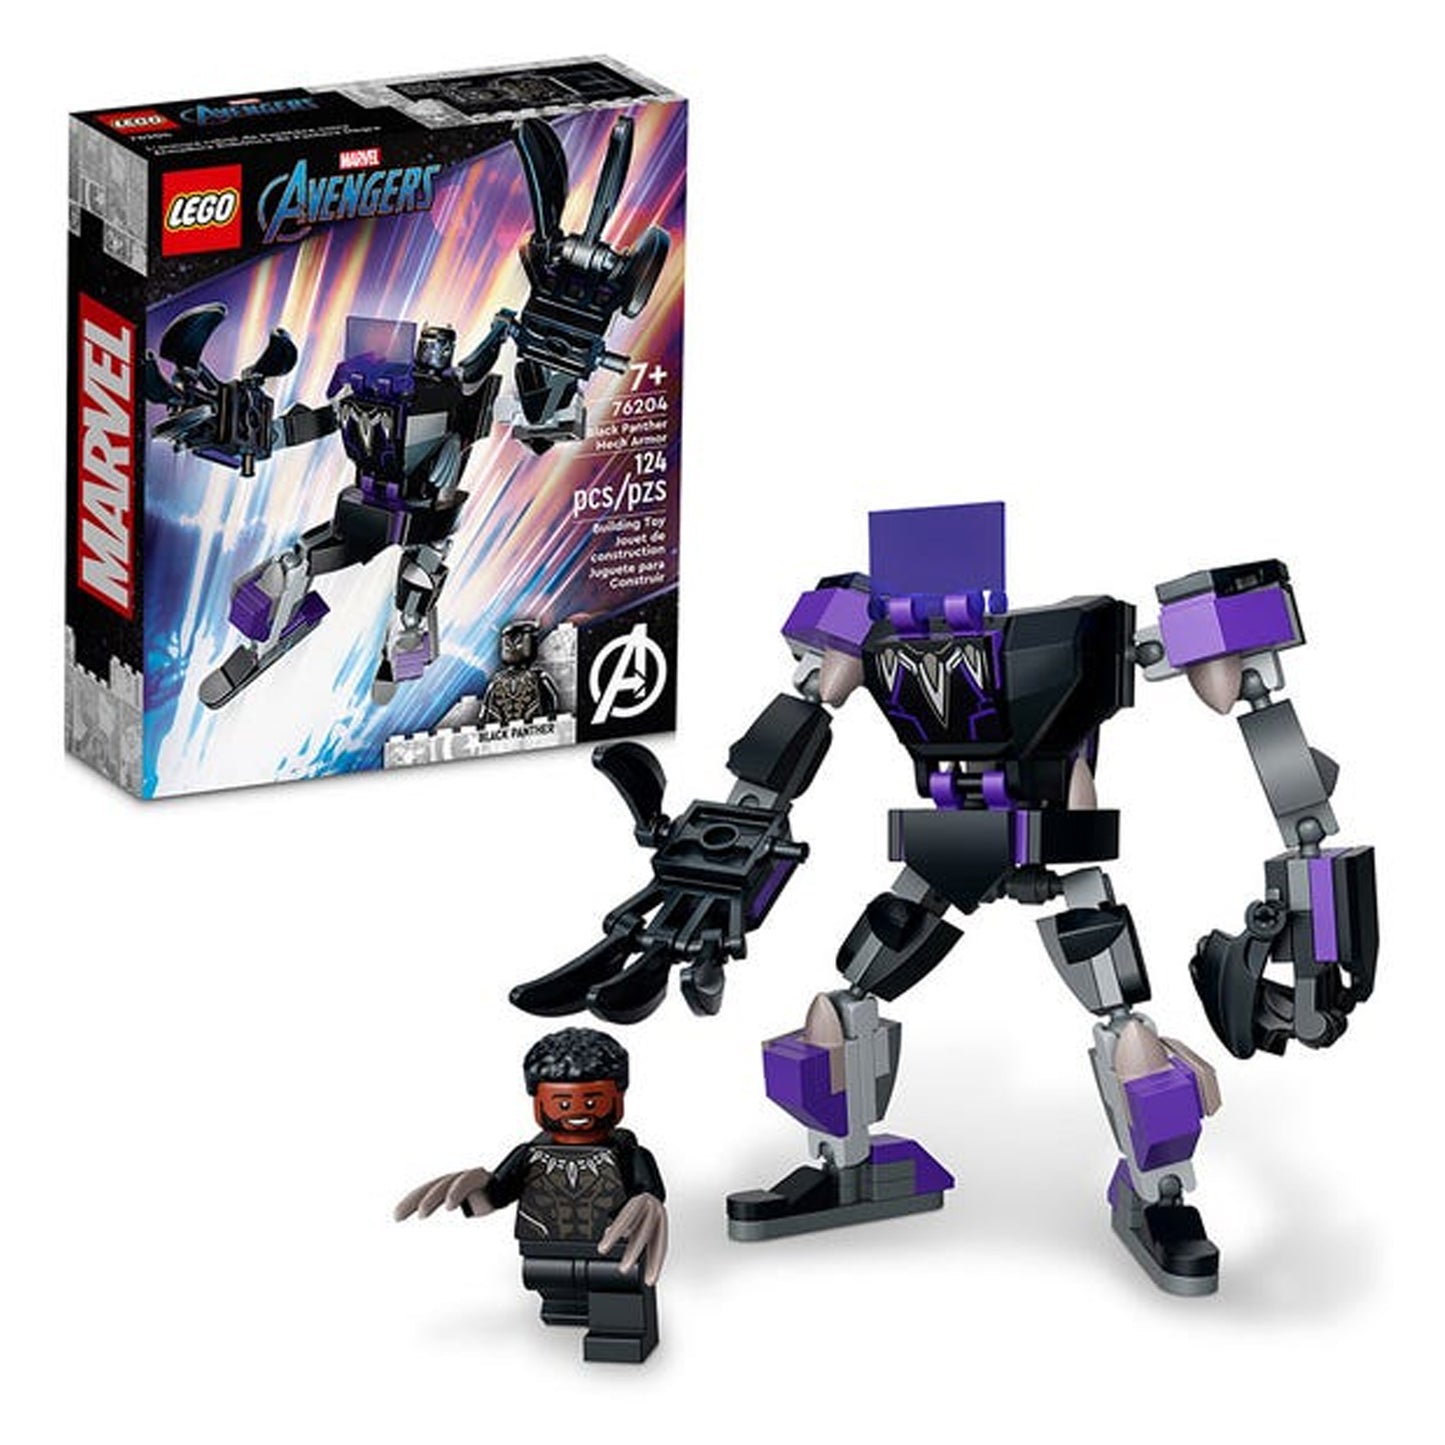 Lego Marvel Armadura Robotica De Pantera Black Panther 76204